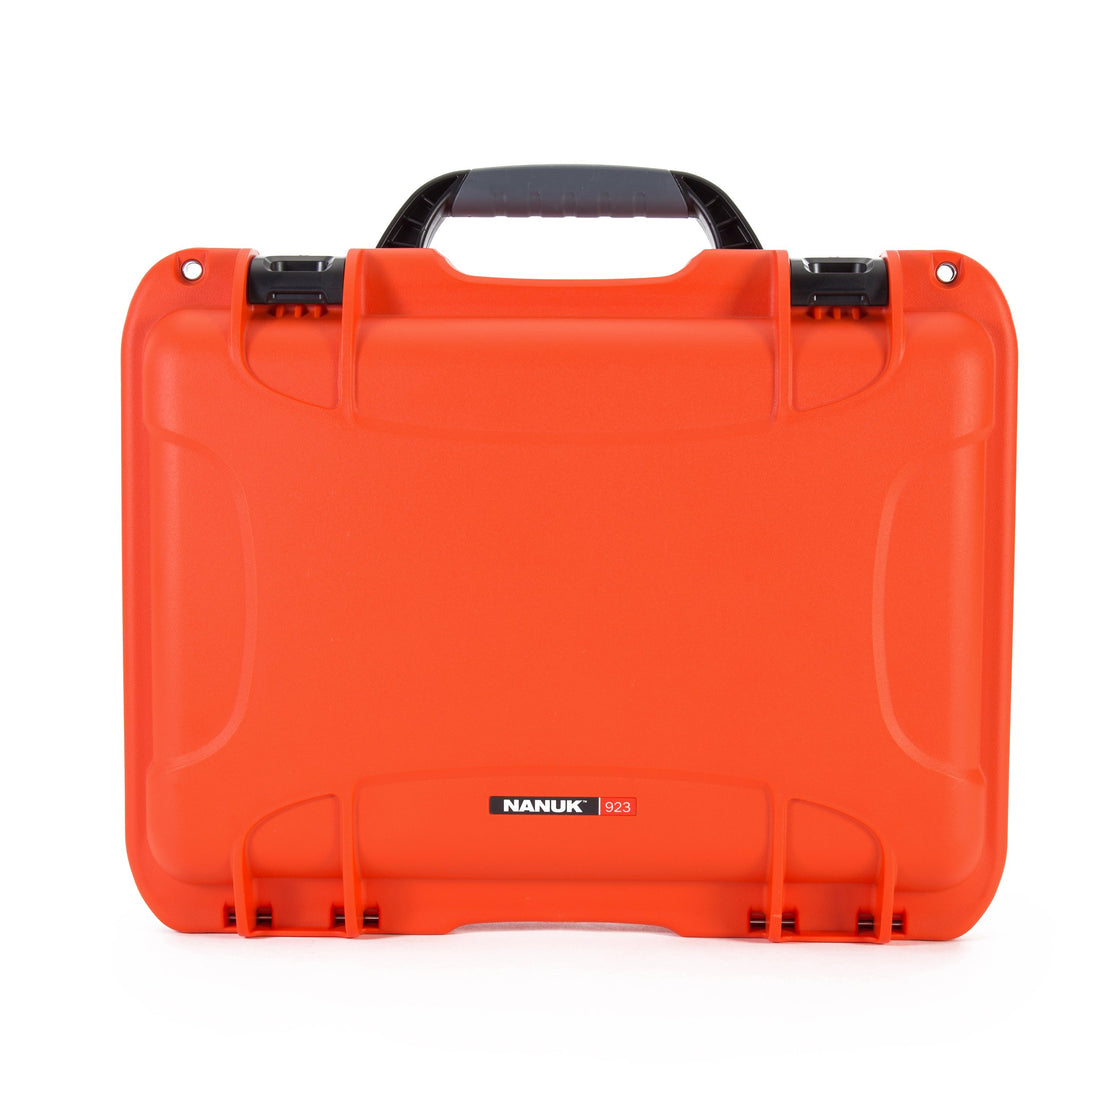 Nanuk 923 Waterproof Hard Case - Orange